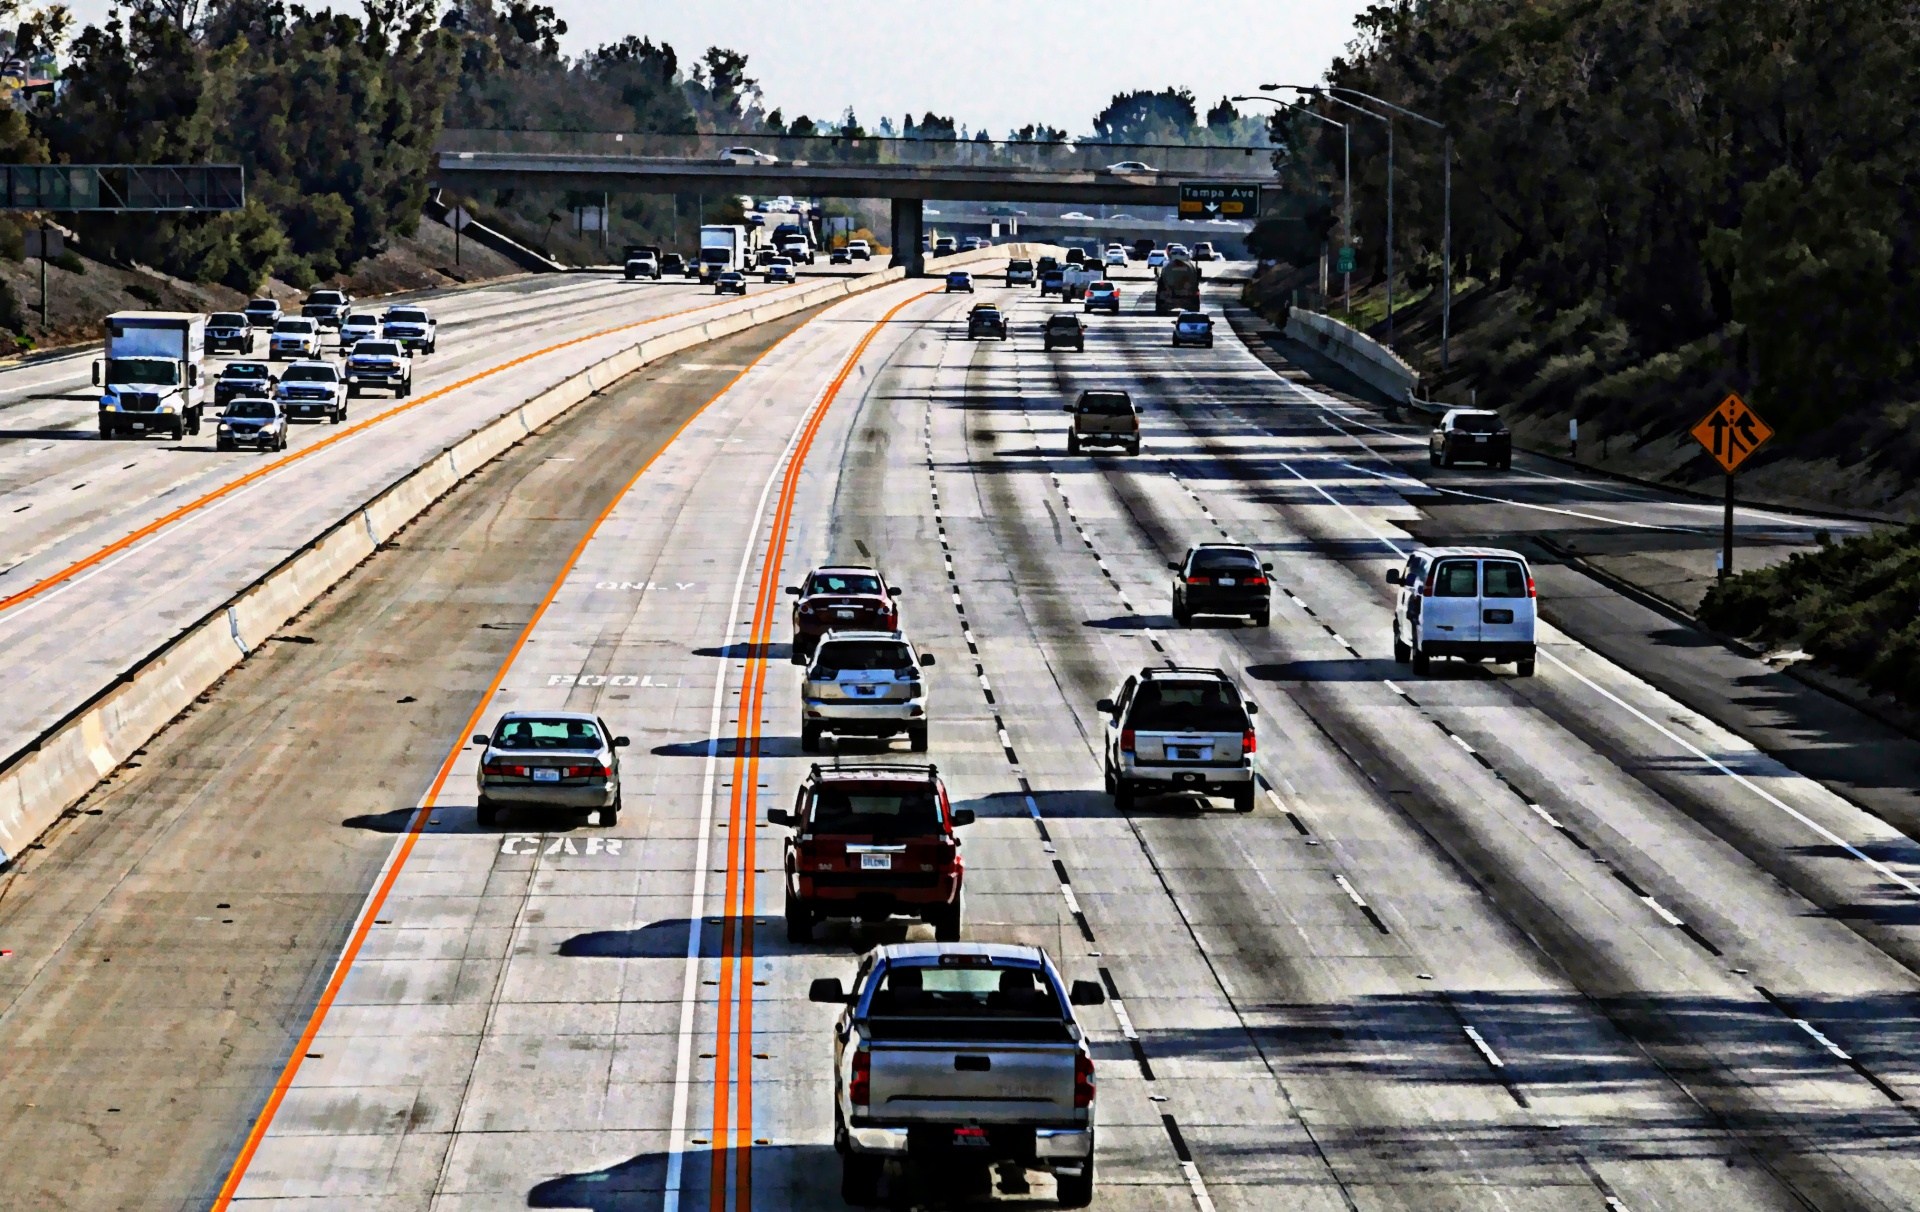 Сравните скоростную автомагистраль и автостраду - в чем разница?